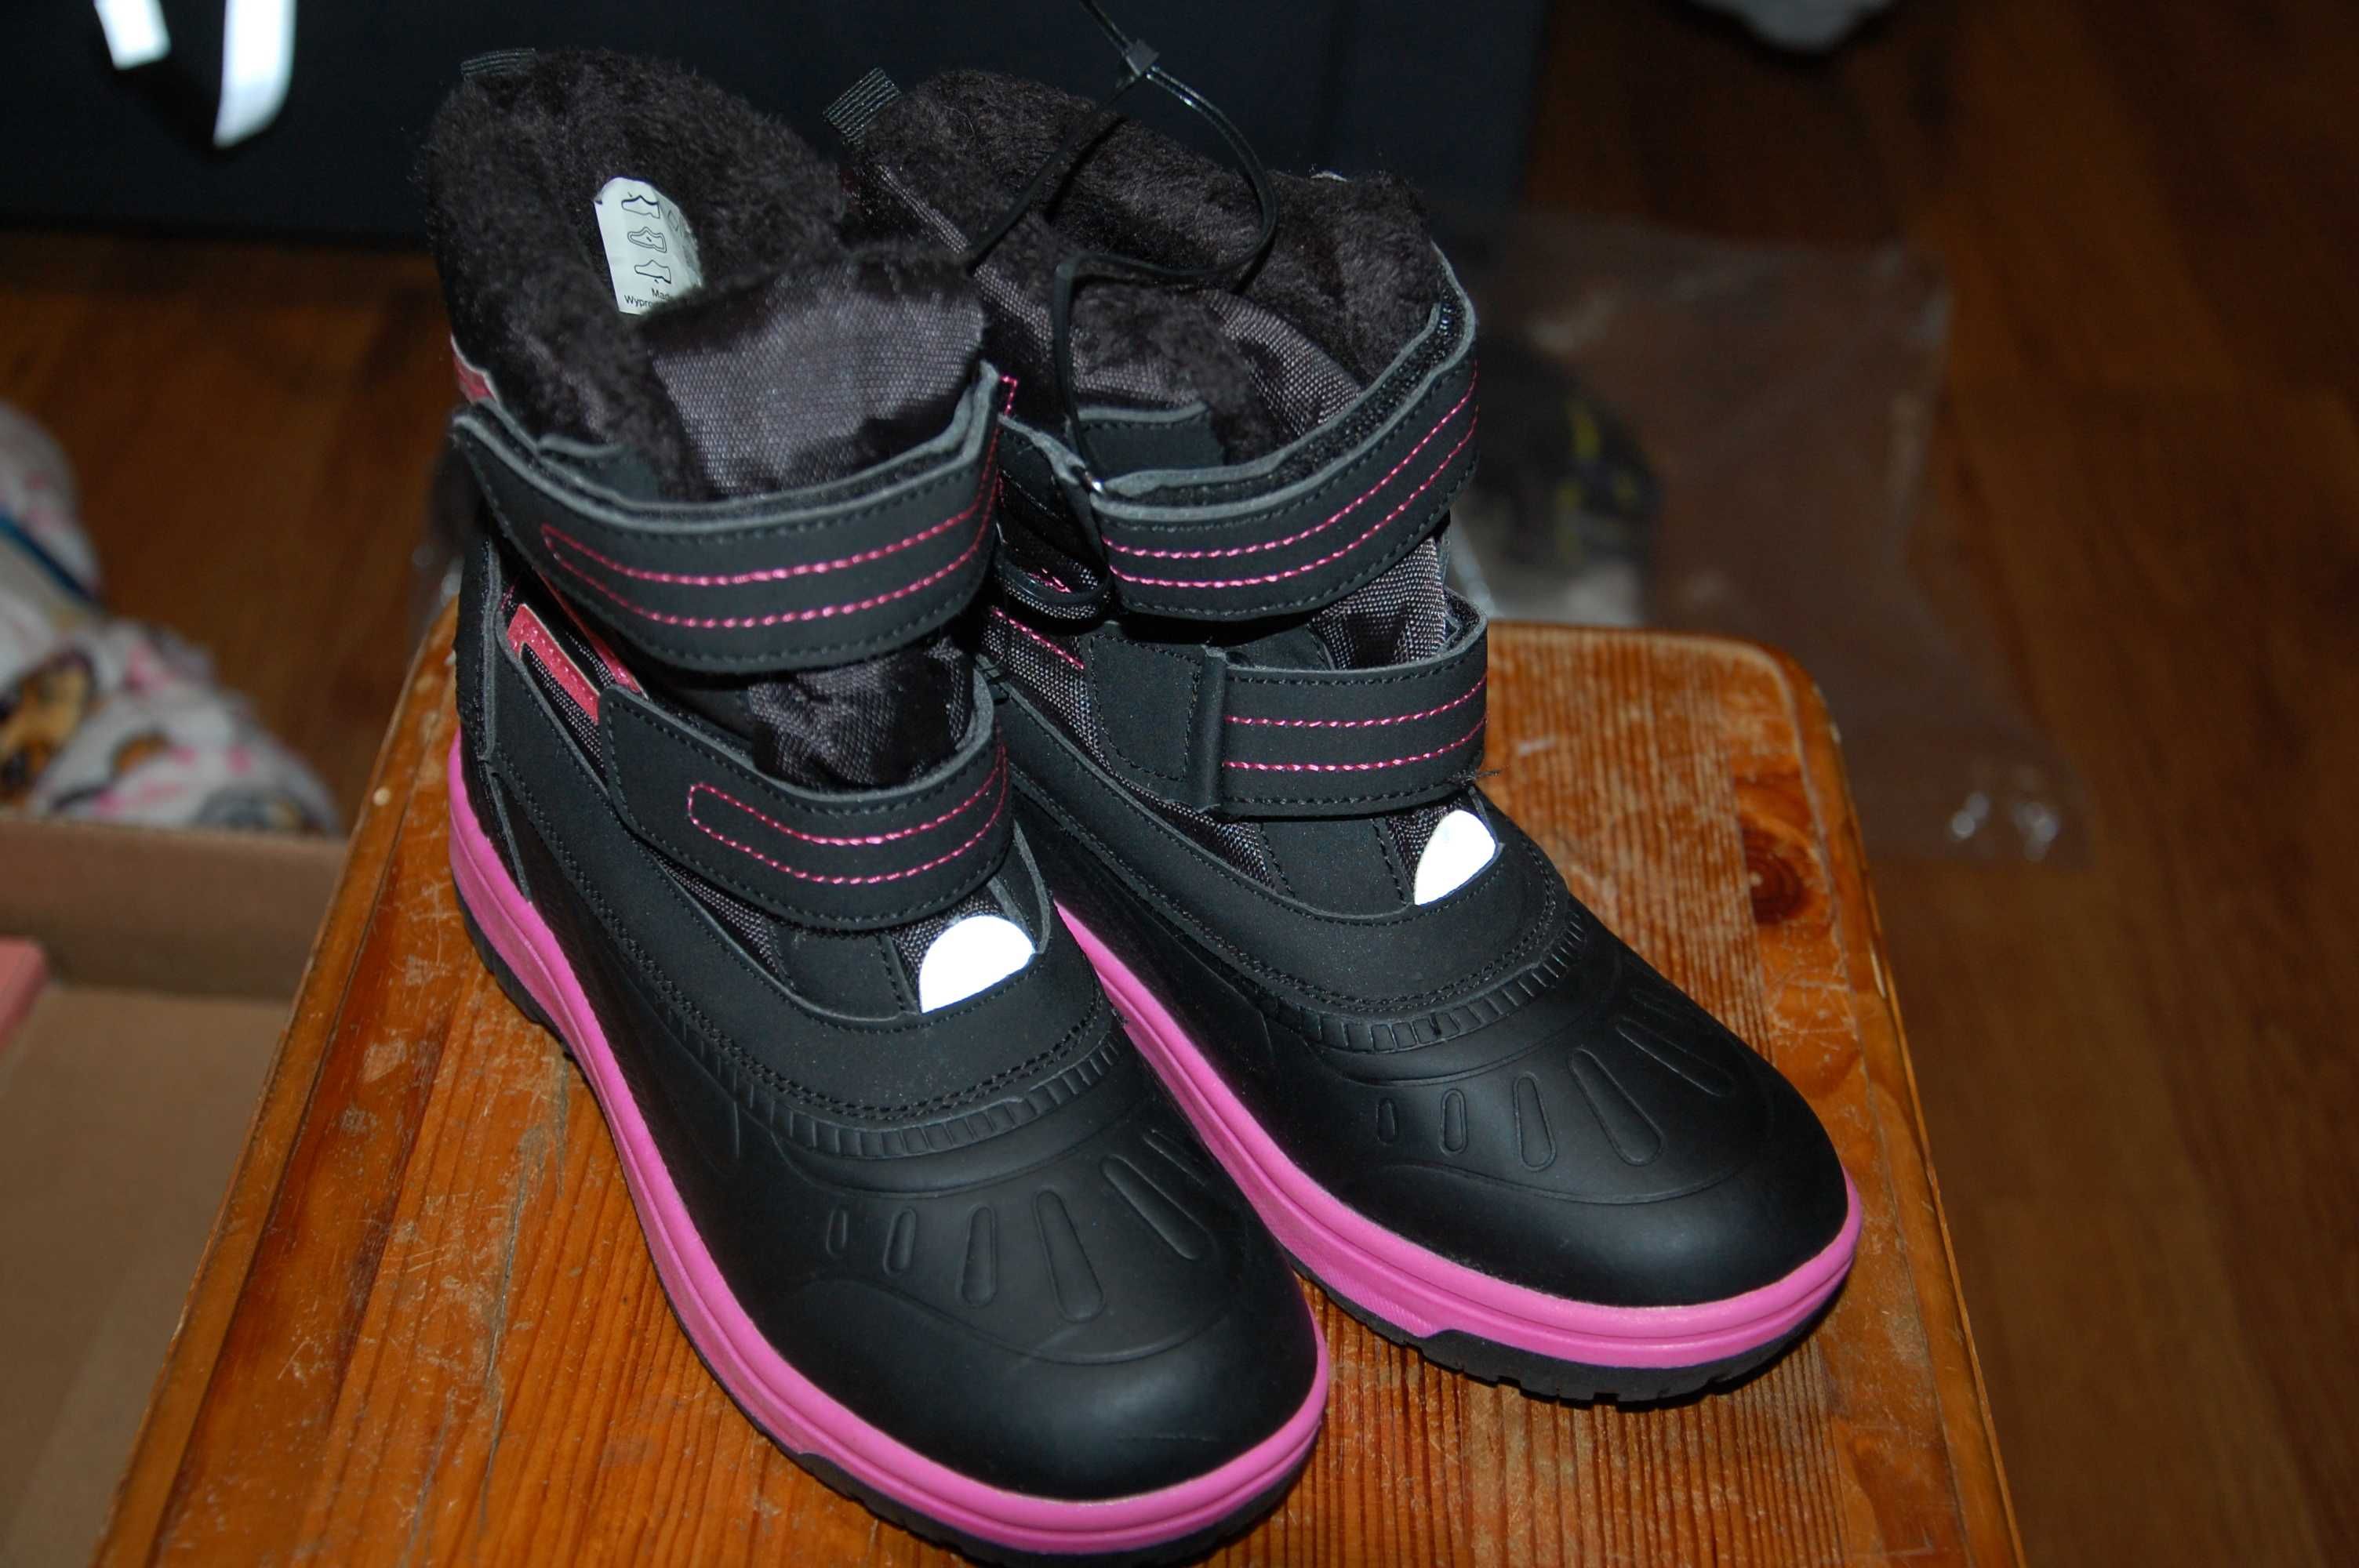 nowe buty zimowe dla dziecka rozmiar 31